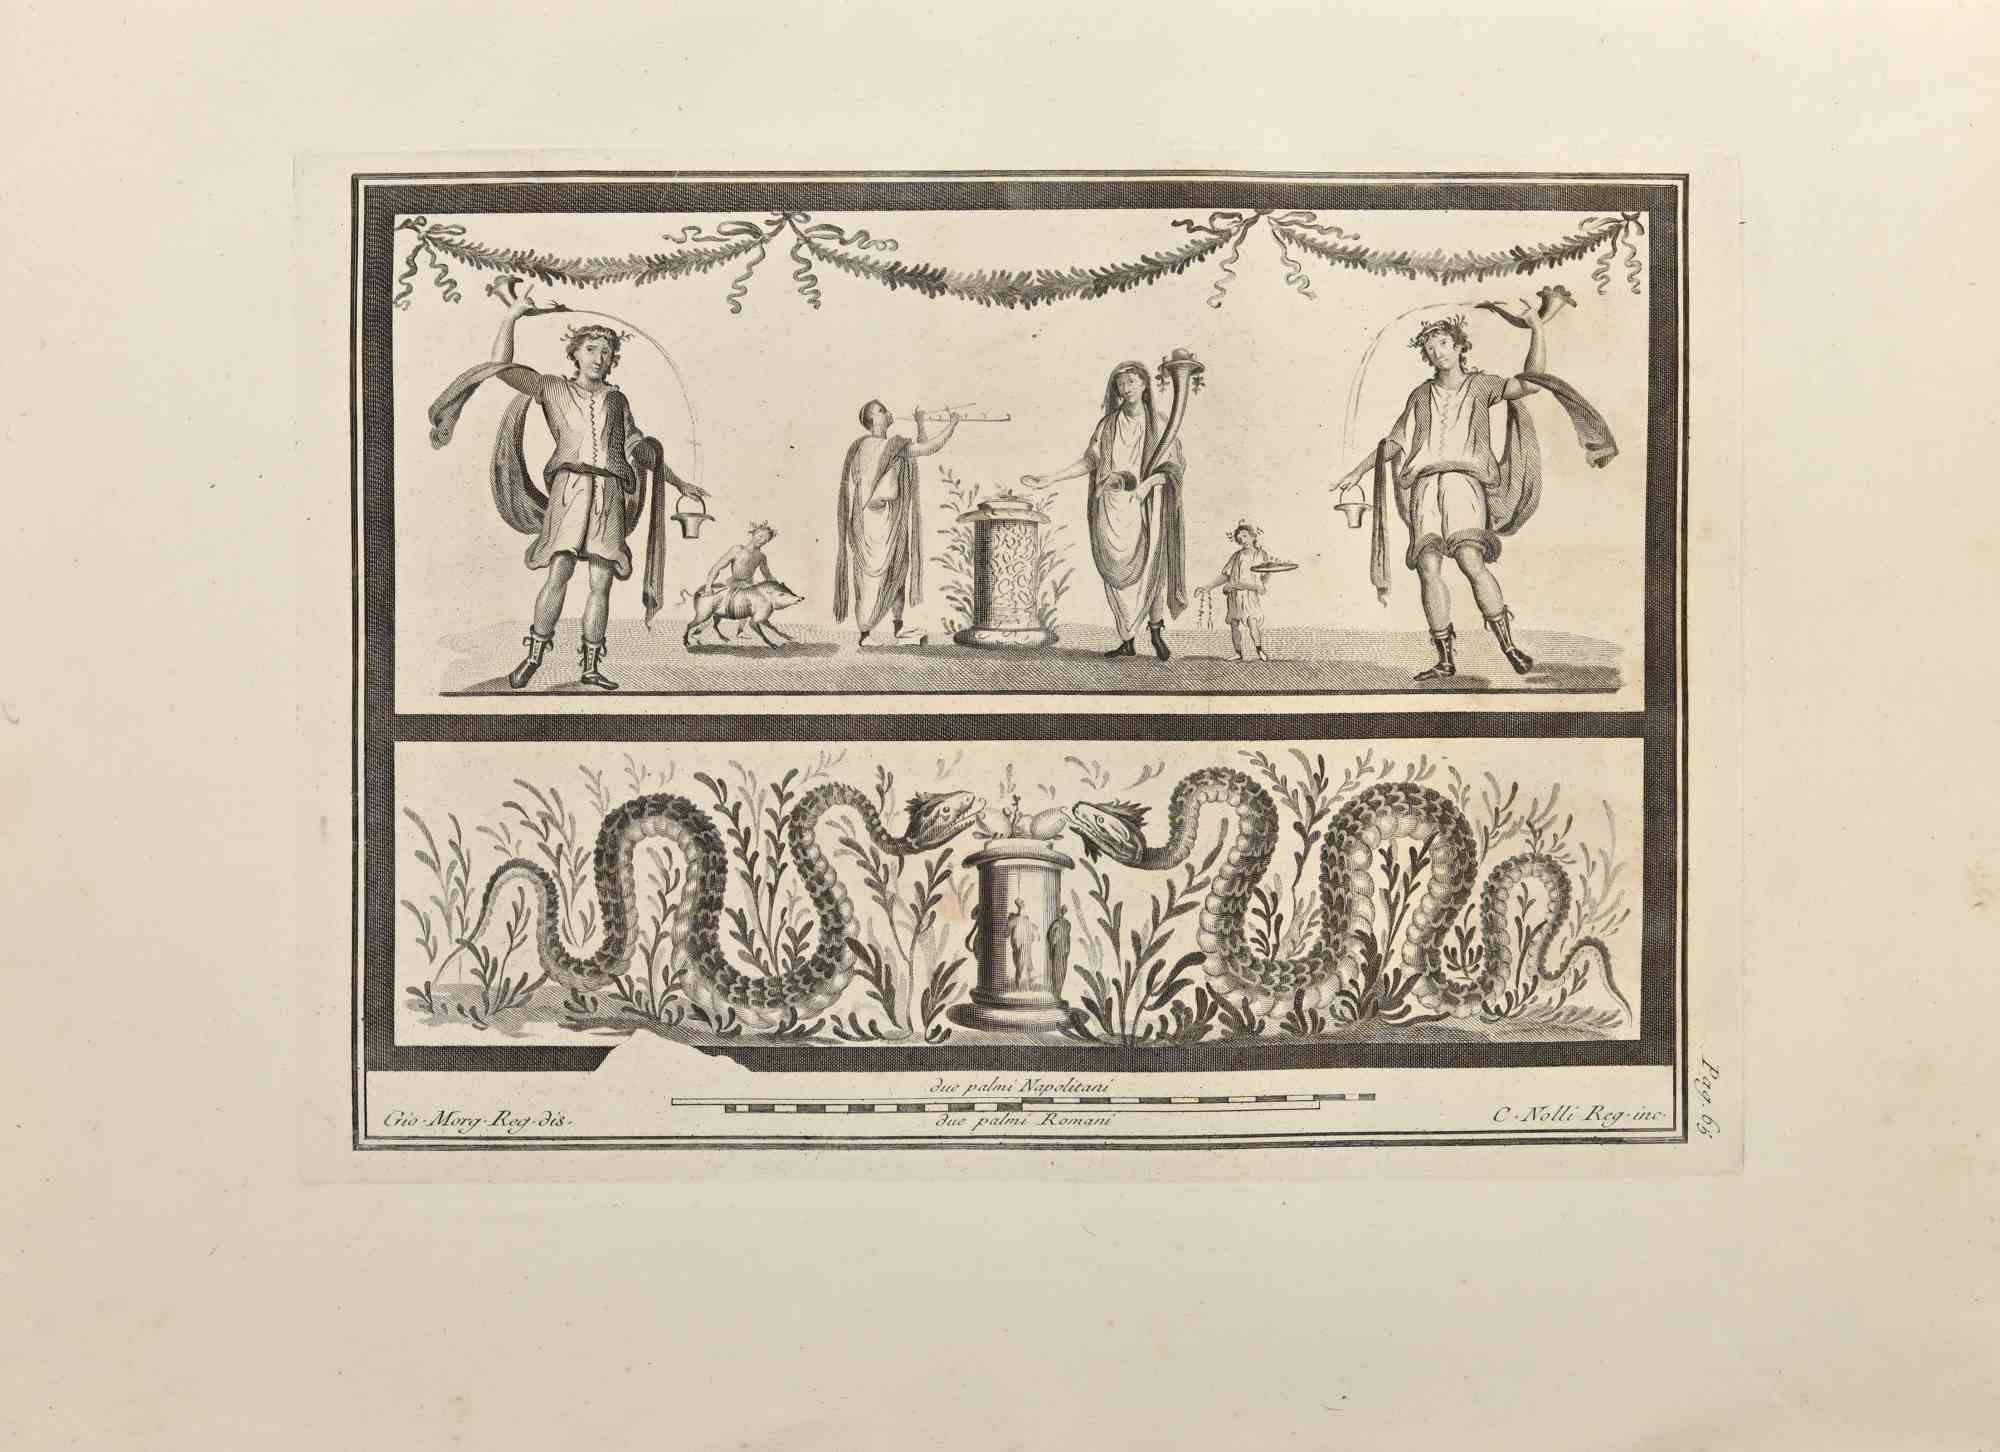 Serpents et cérémonie romaine des "Antiquités d'Herculanum" est une eau-forte sur papier réalisée par Carlo Nolli au XVIIIe siècle.

Signé sur la plaque.

Bonnes conditions avec quelques rousseurs et pliures dues à l'époque.

La gravure appartient à